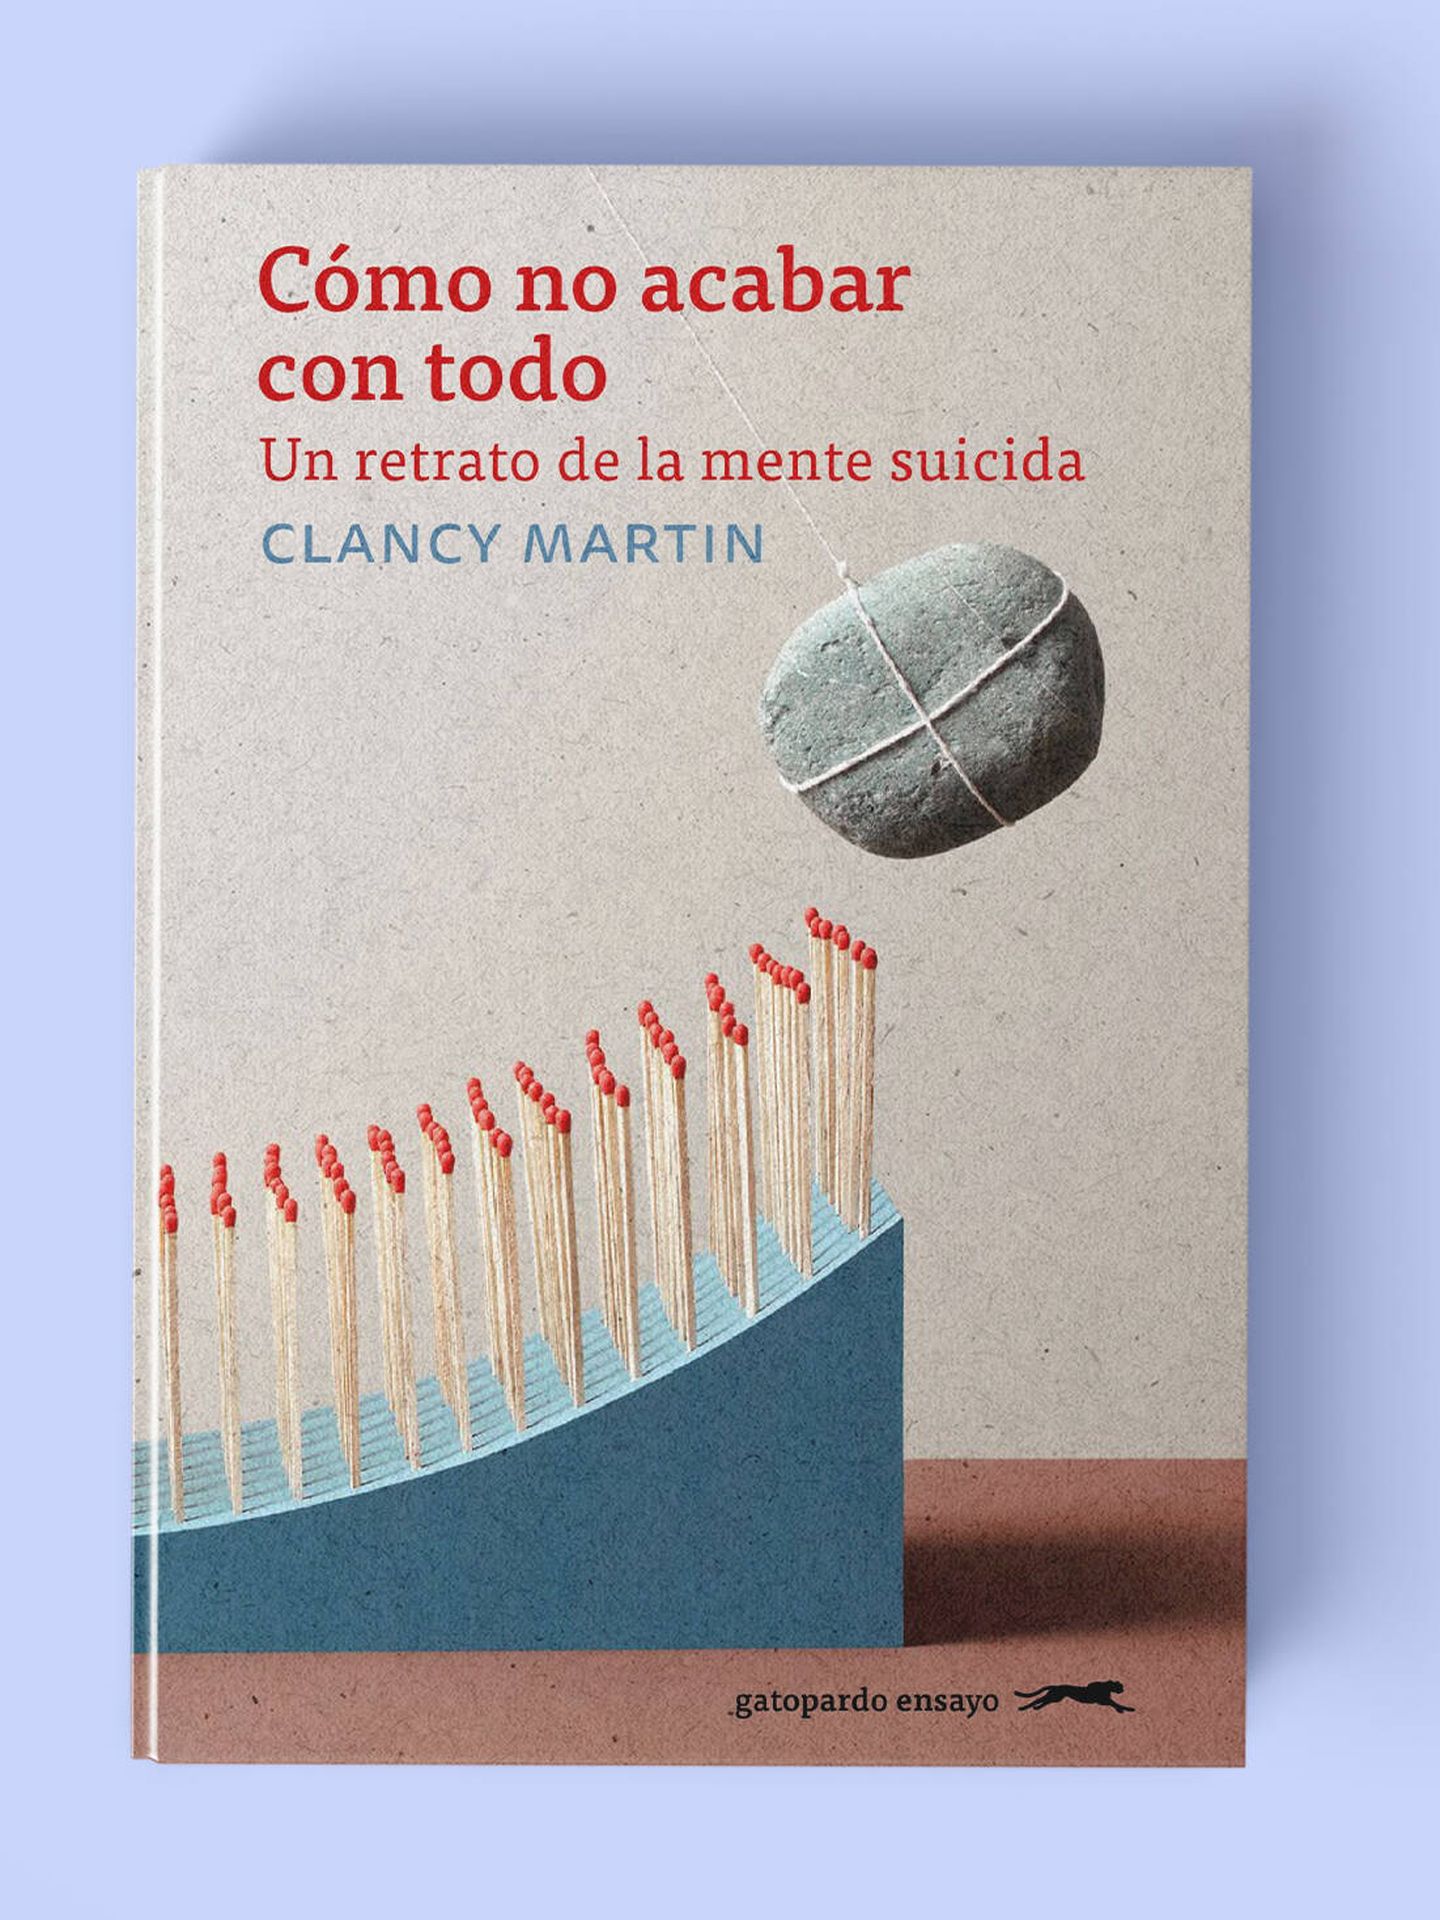 Portada de 'Cómo no acabar con todo. Un retrato de la mente suicida', de Clancy Martin.